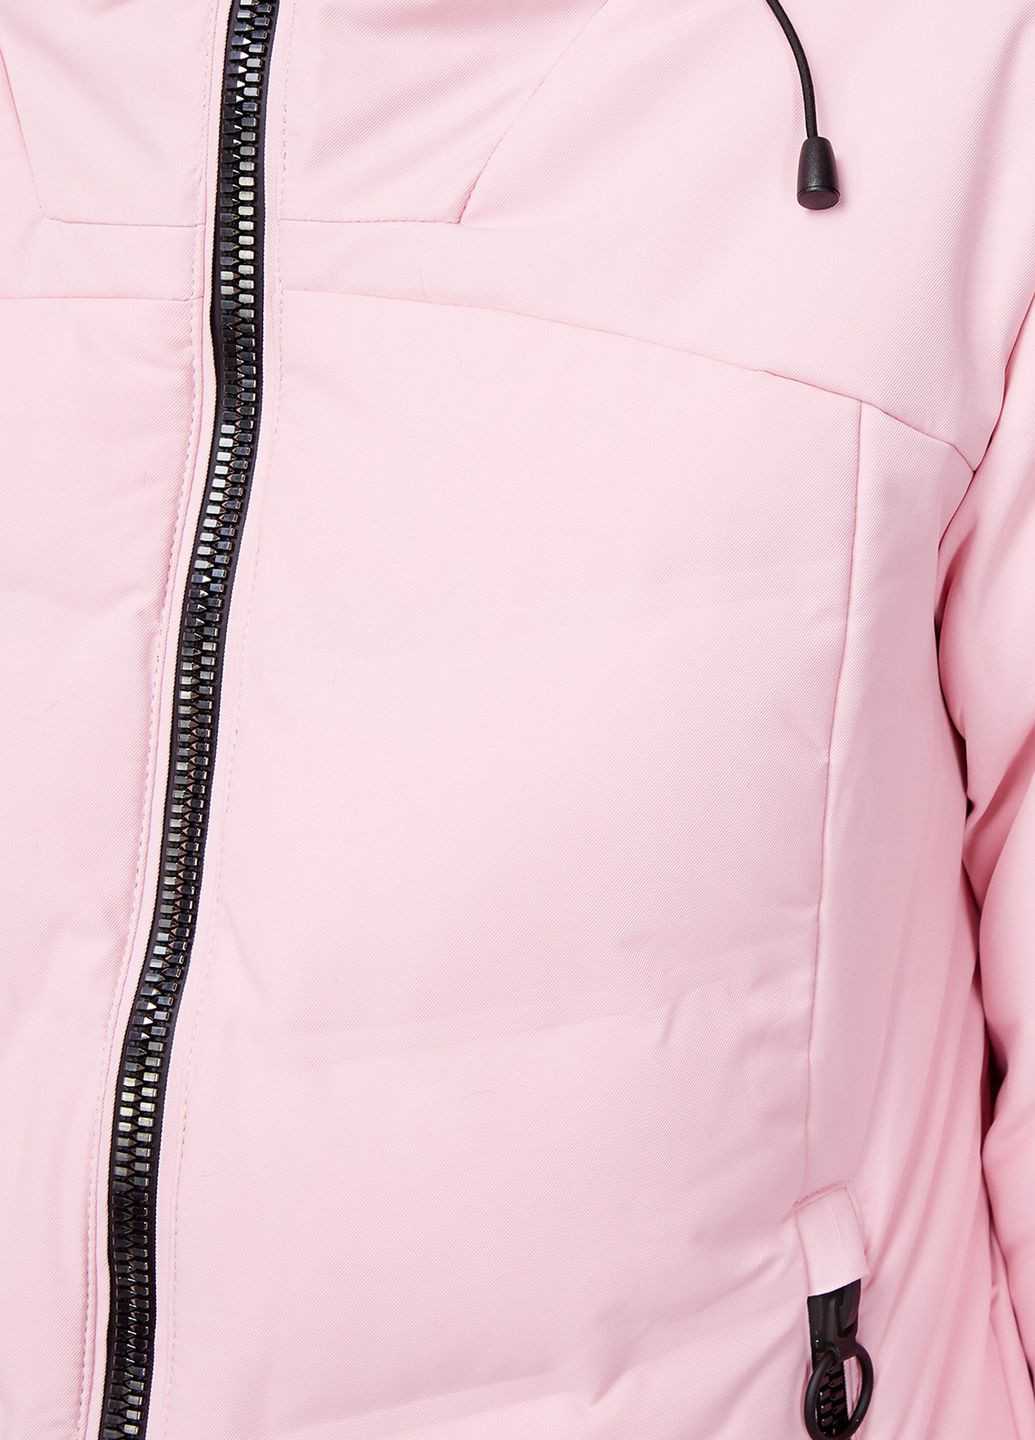 Женская розовая горнолыжная куртка Jacket Fix Hood CMP (260760491)